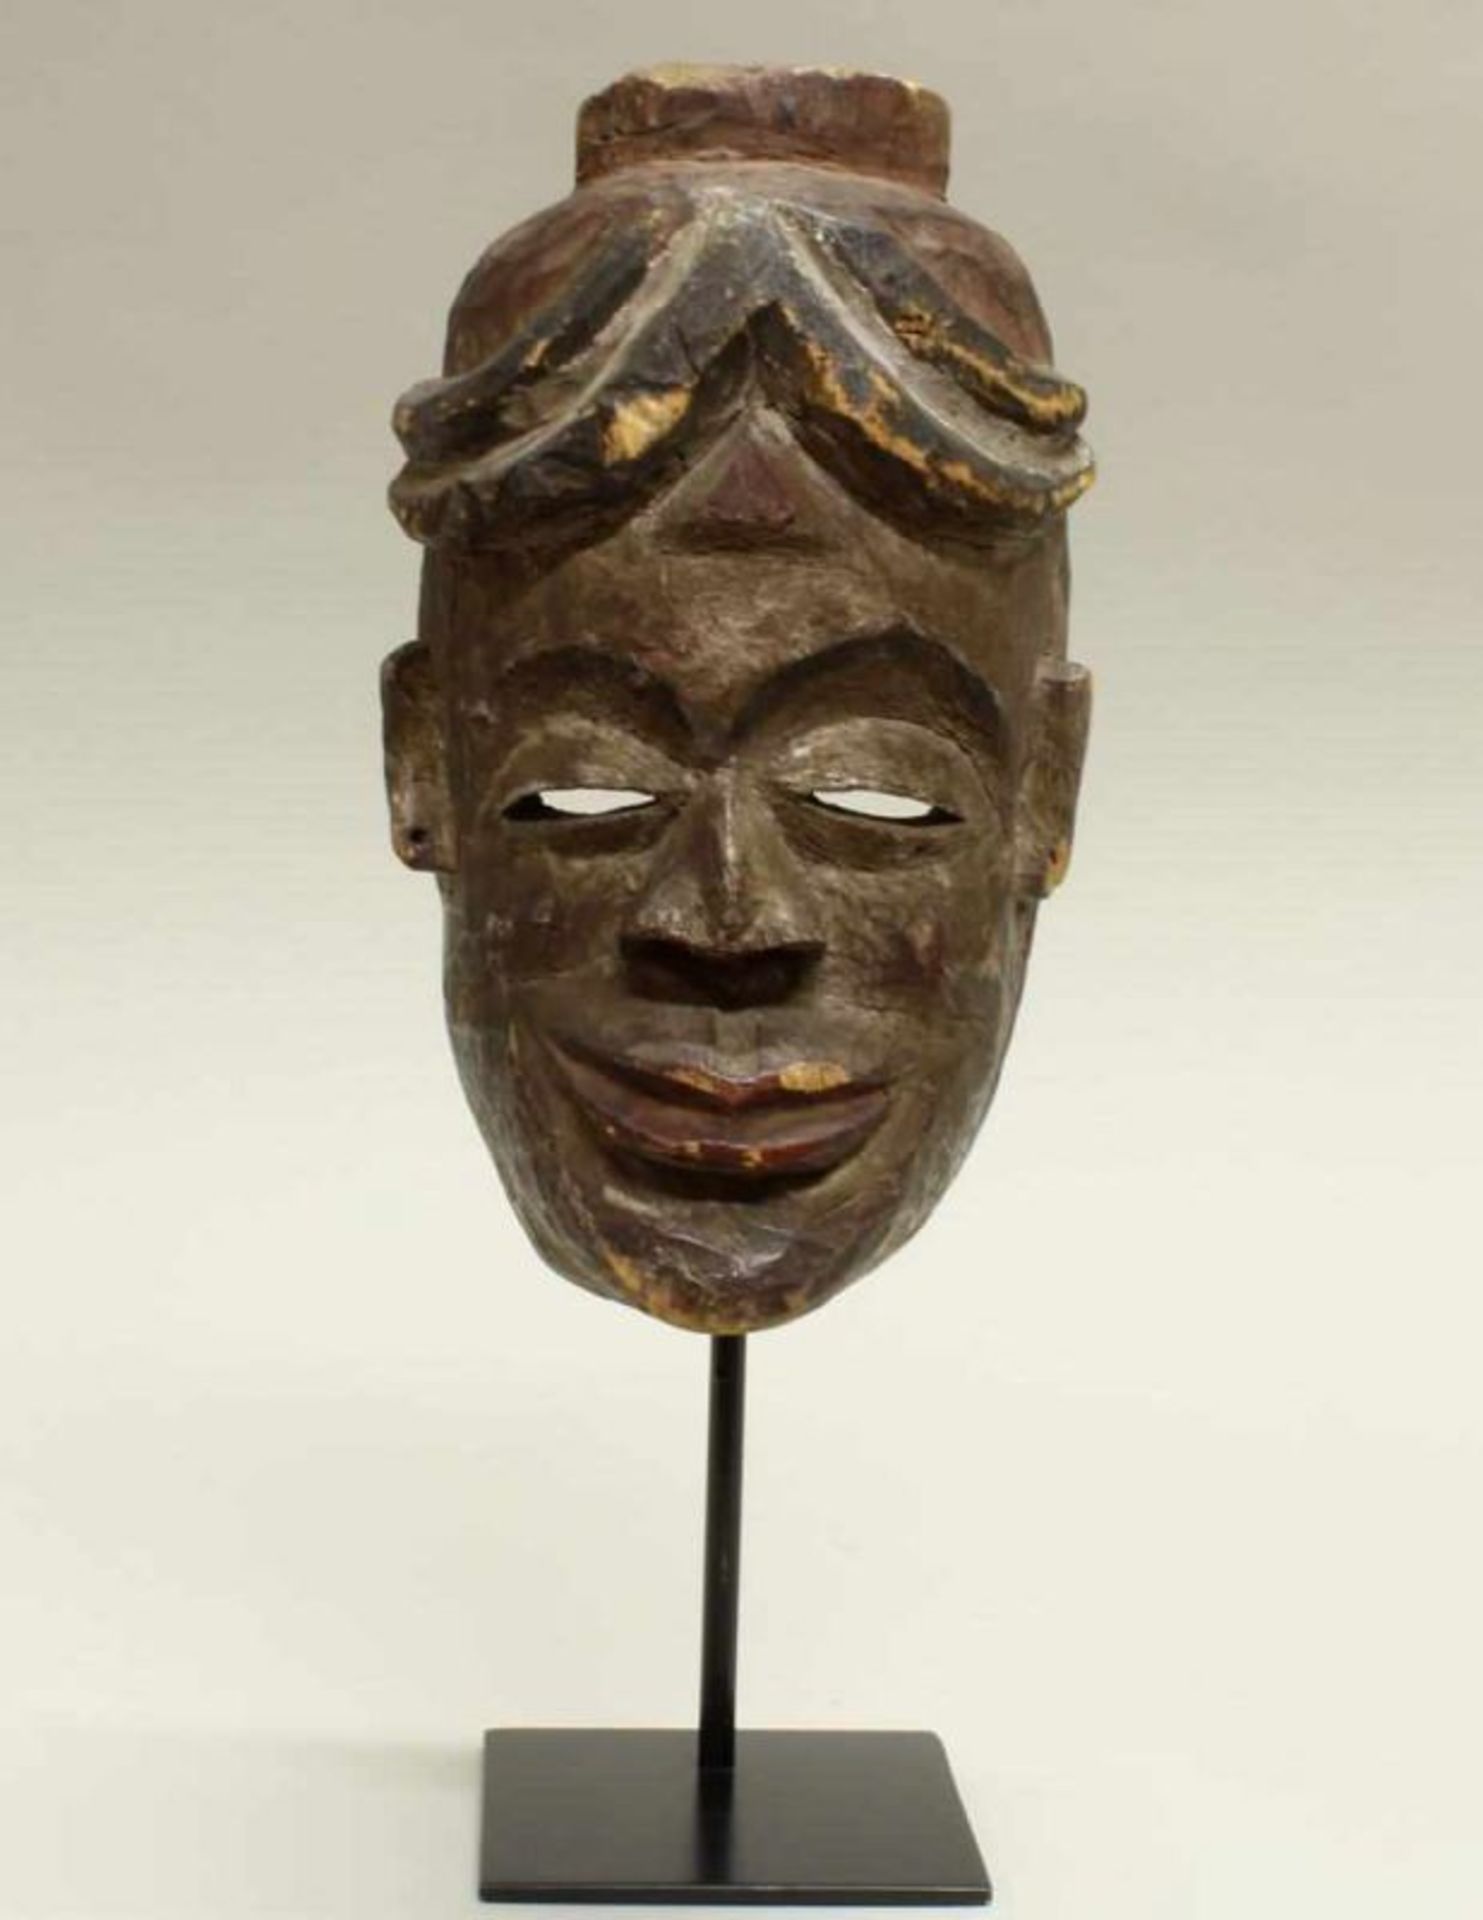 Maske, Ibo, Nigeria, Afrika, authentisch, Holz mit Resten polychromer Bemalung, 25 cm hoch,